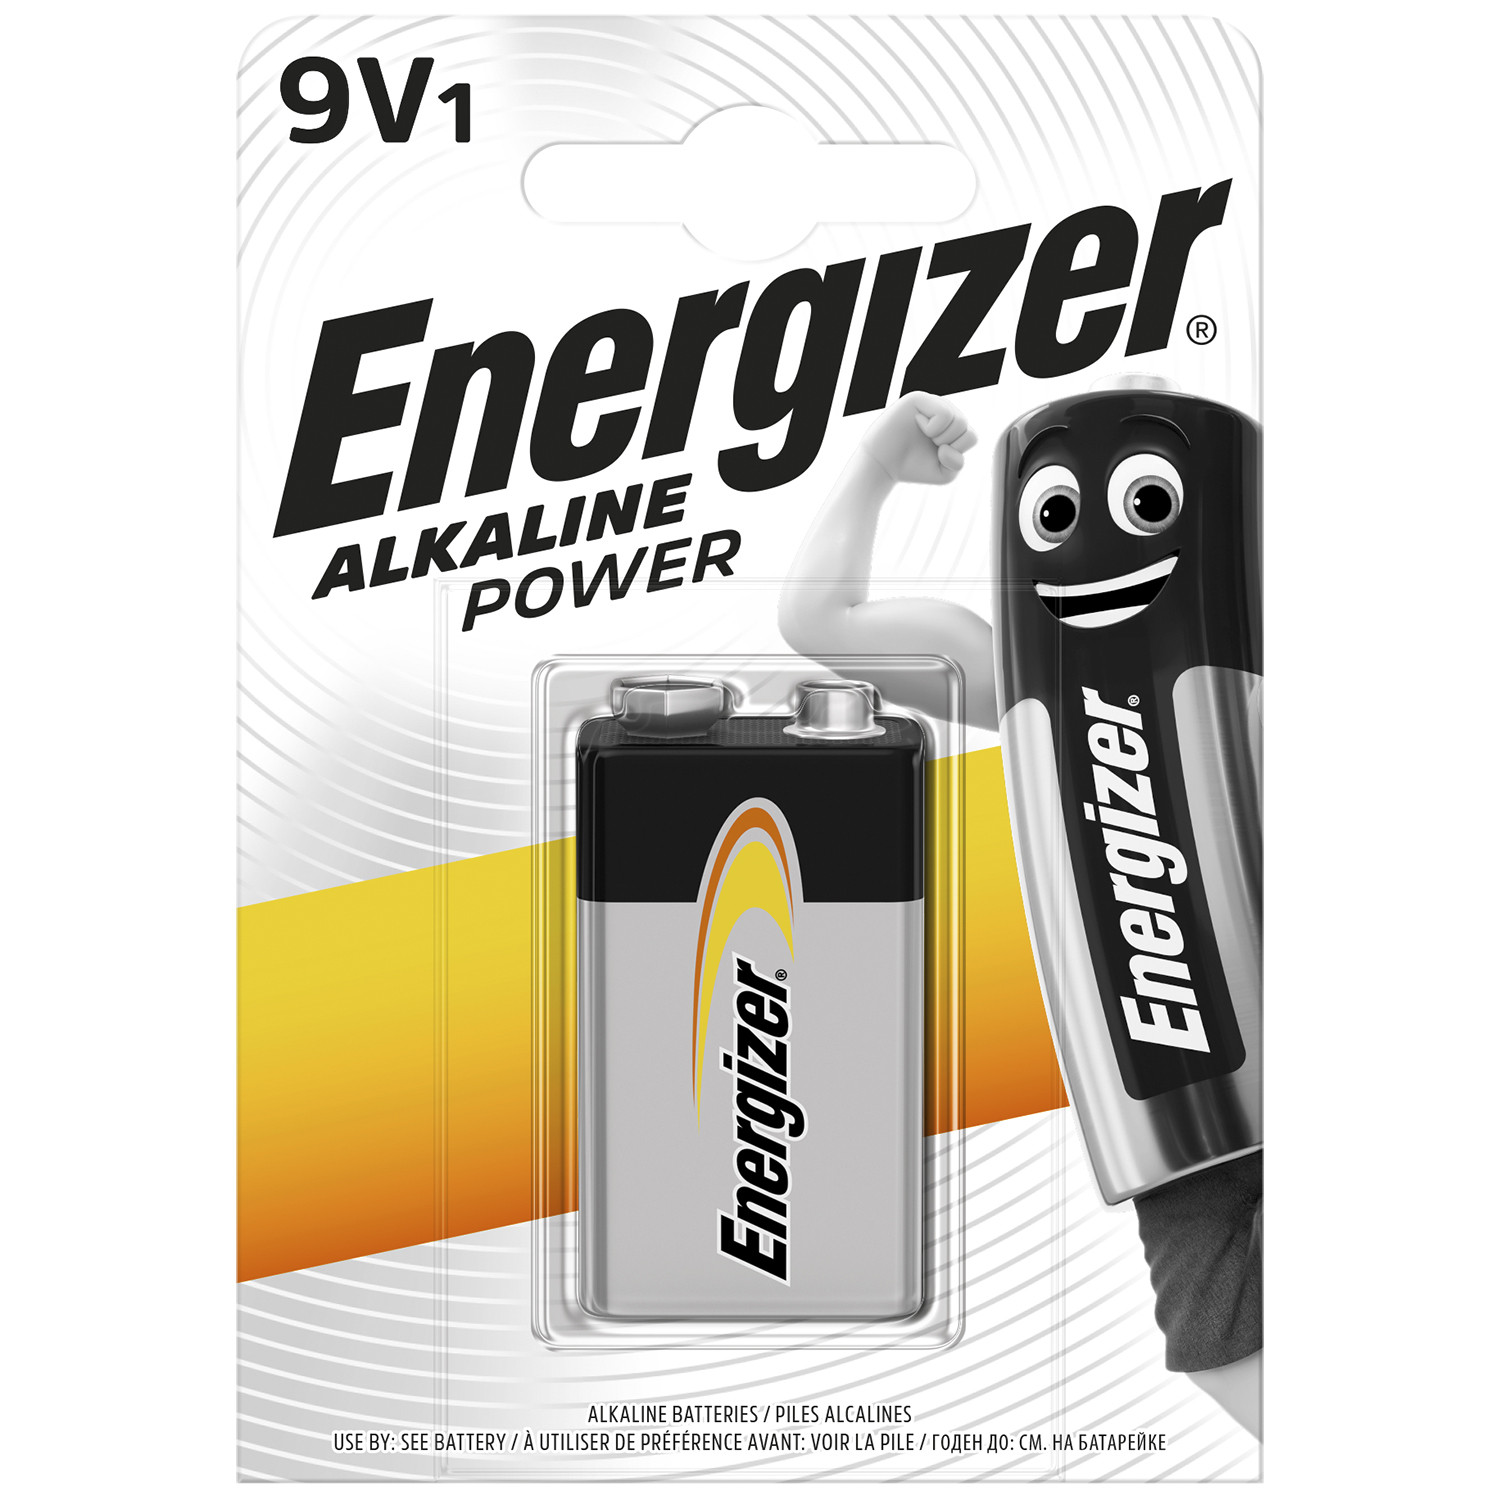 Energizer Alkaline Power 9V Battery Image